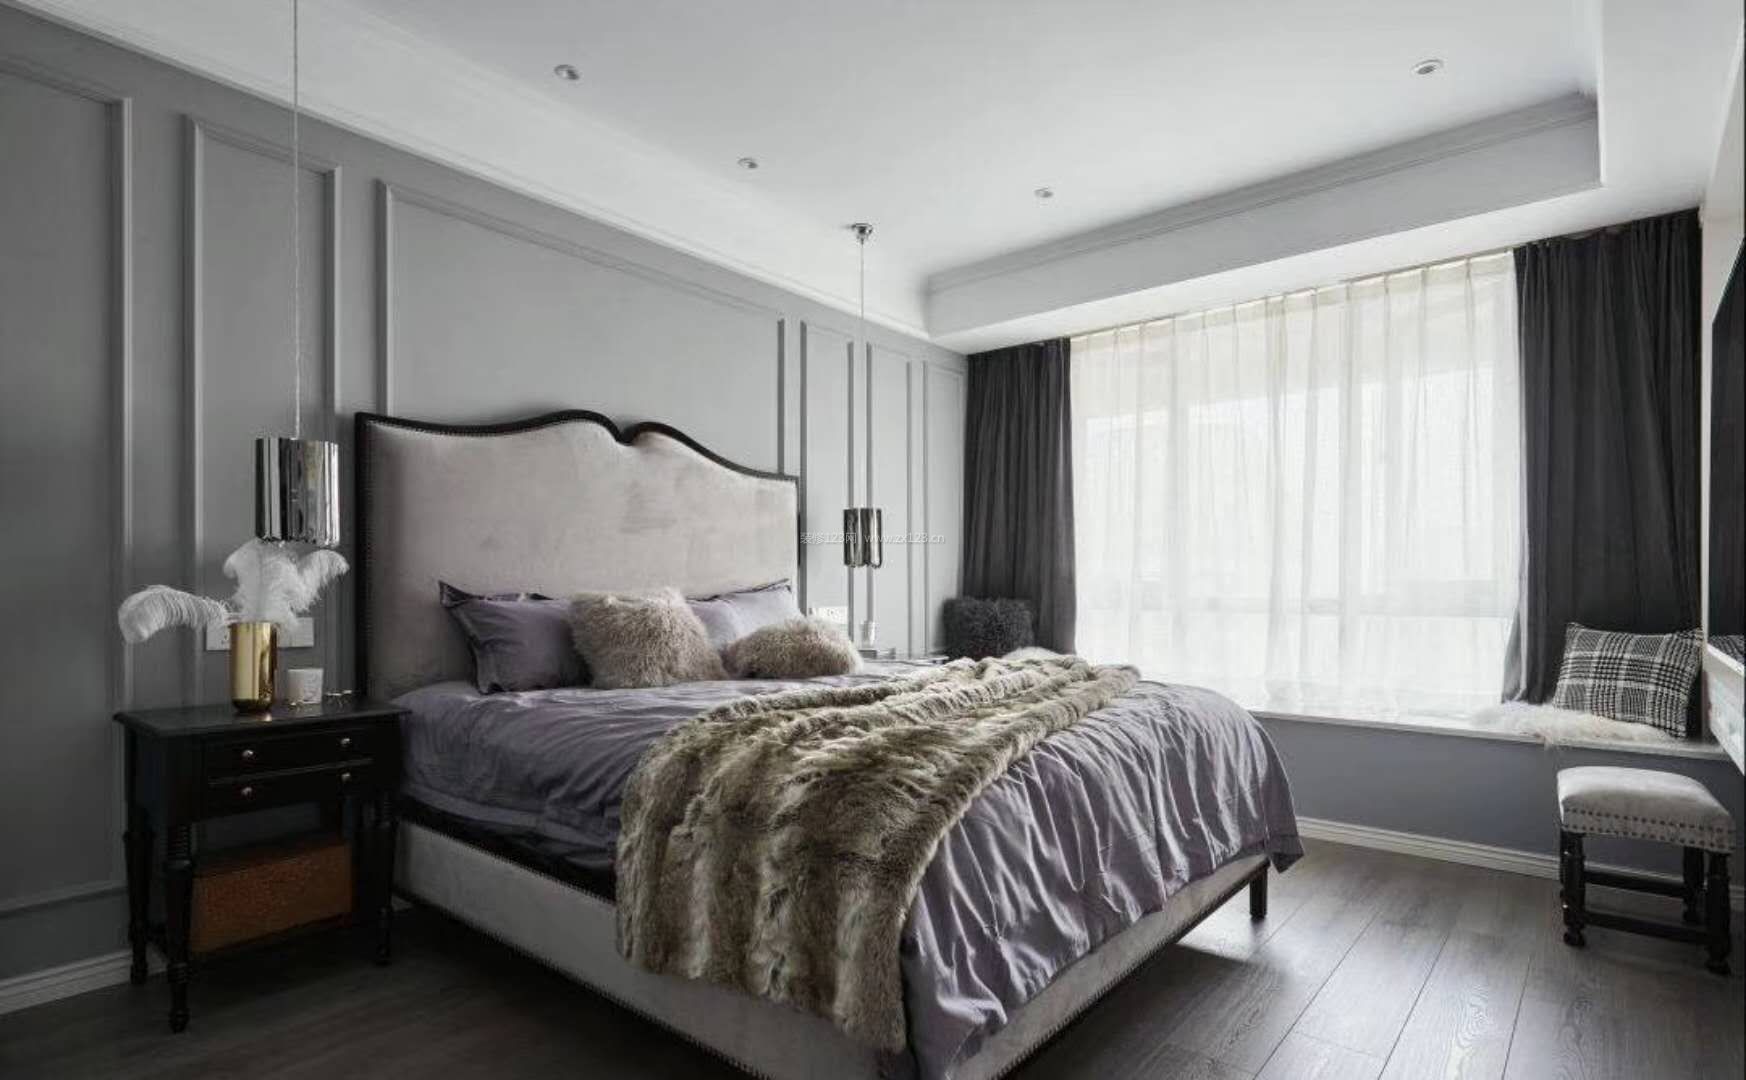 现代美式卧室飘窗窗帘装修效果图片